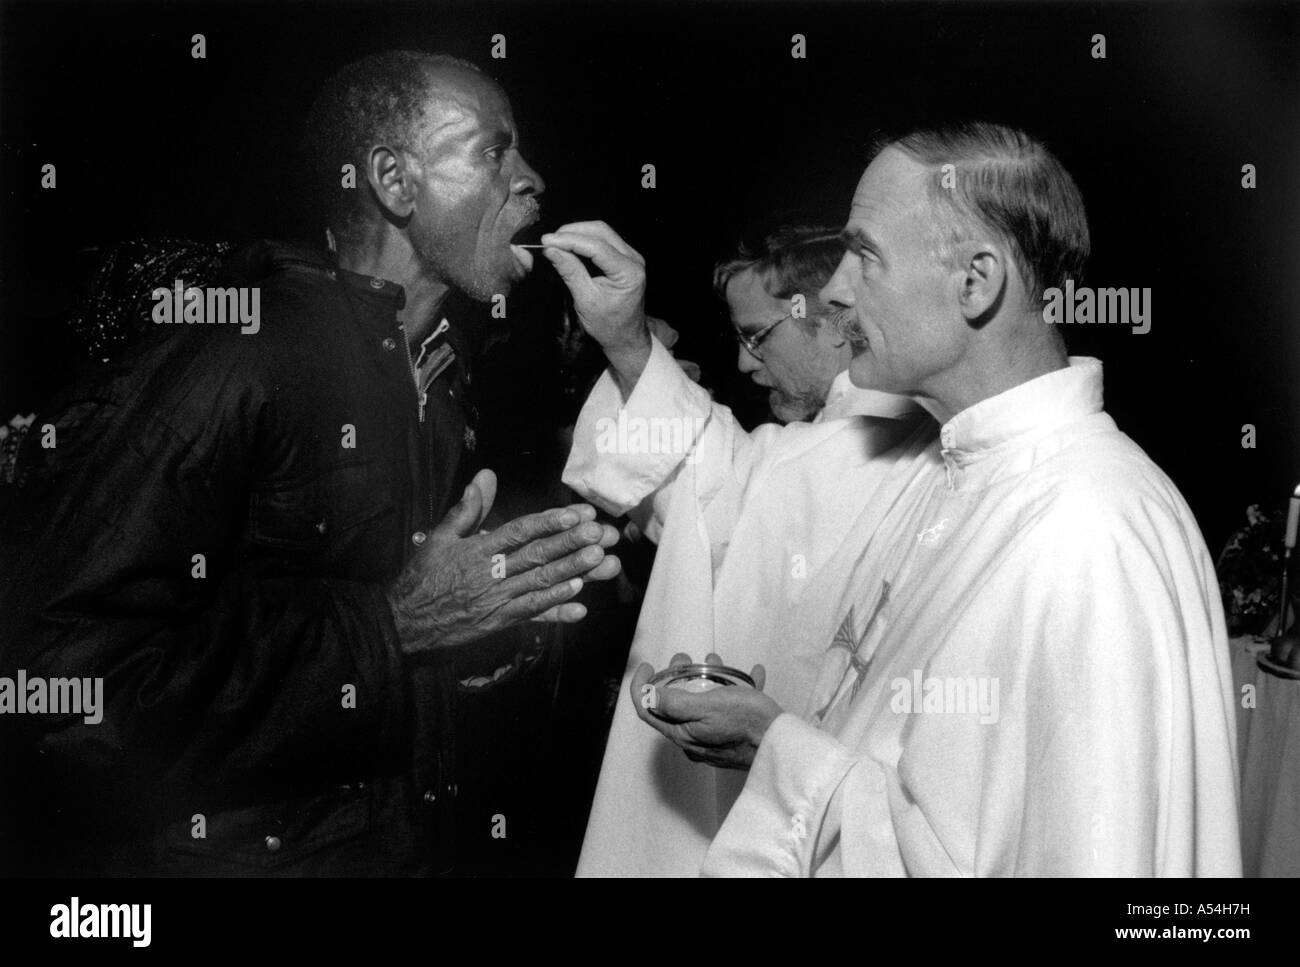 Painet ac1503 noir et blanc american religion prêtre maryknoll bucharist issenye donnant des images pc pays Tanzanie Banque D'Images